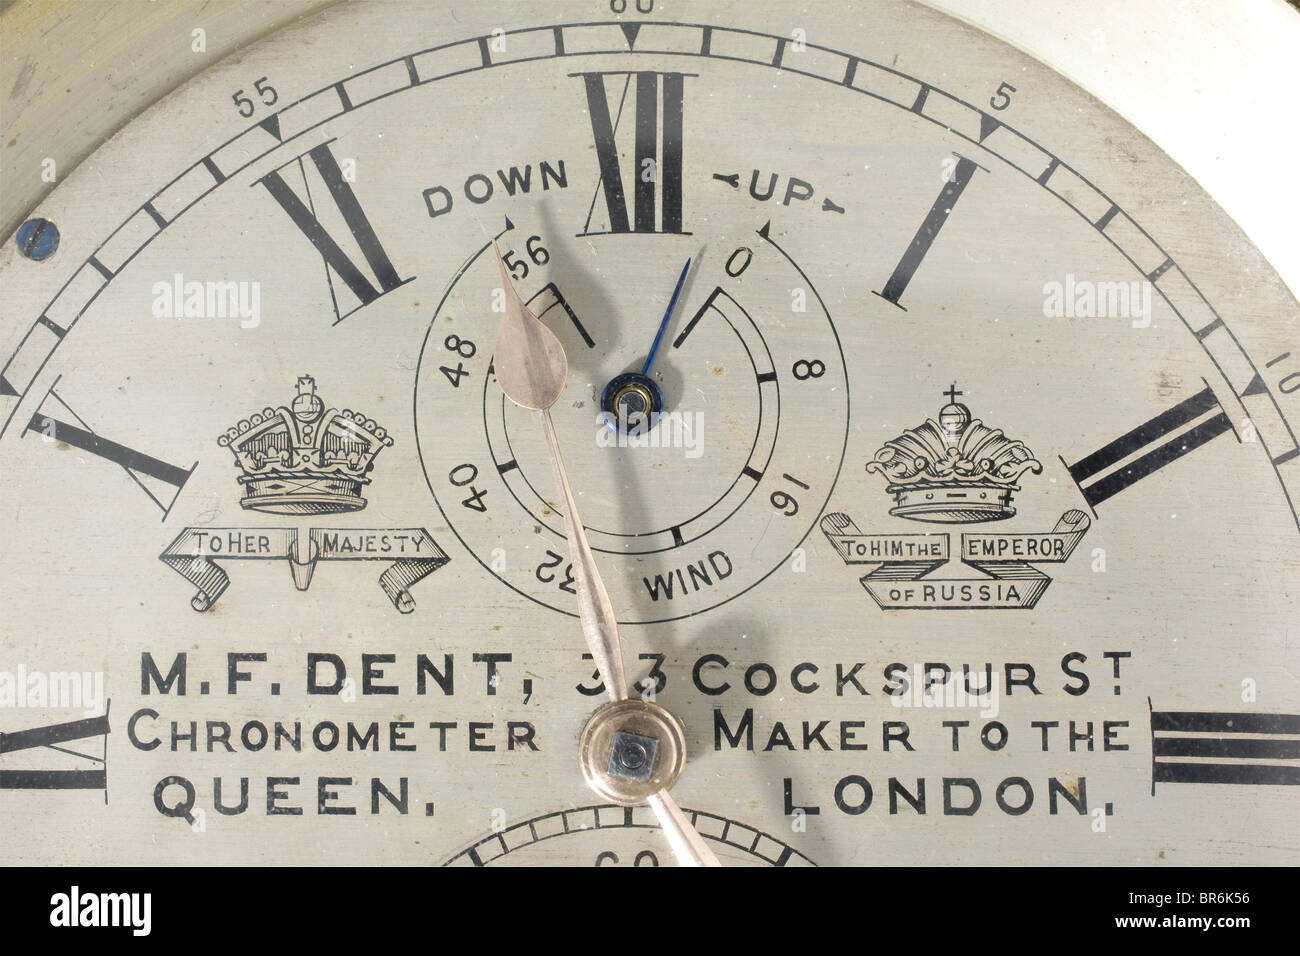 Ein 8-tägiges Meereschronometer des Gerichts-Chronometermachers Dent in London, ca. 1875. Vergoldetes Messinggehäuse und Gimbal, versilbertes Messrad mit schwarzen Markierungen. Maker-Name mit englischer und russischer Krone, kleine Sekunde mit Fabriknummer "31201" auf der 6-Uhr-Anzeige, 56-Stunden-Reserveanzeige auf der 12-Uhr-Position, vergoldete Hände. Komplett mit Schlüssel in einer dreiteiligen Holztasche mit Tragegriffen und Maker-Etikett mit passenden Nummern. Nicht auf Funktion überprüft. Historisch, historisch, 19. Jahrhundert, Objekt, Objekte, Stills, Clipping, Ausschnitte, Ausschneiden, Ausschneiden, Ausschneiden, Cut-o, Stockfoto